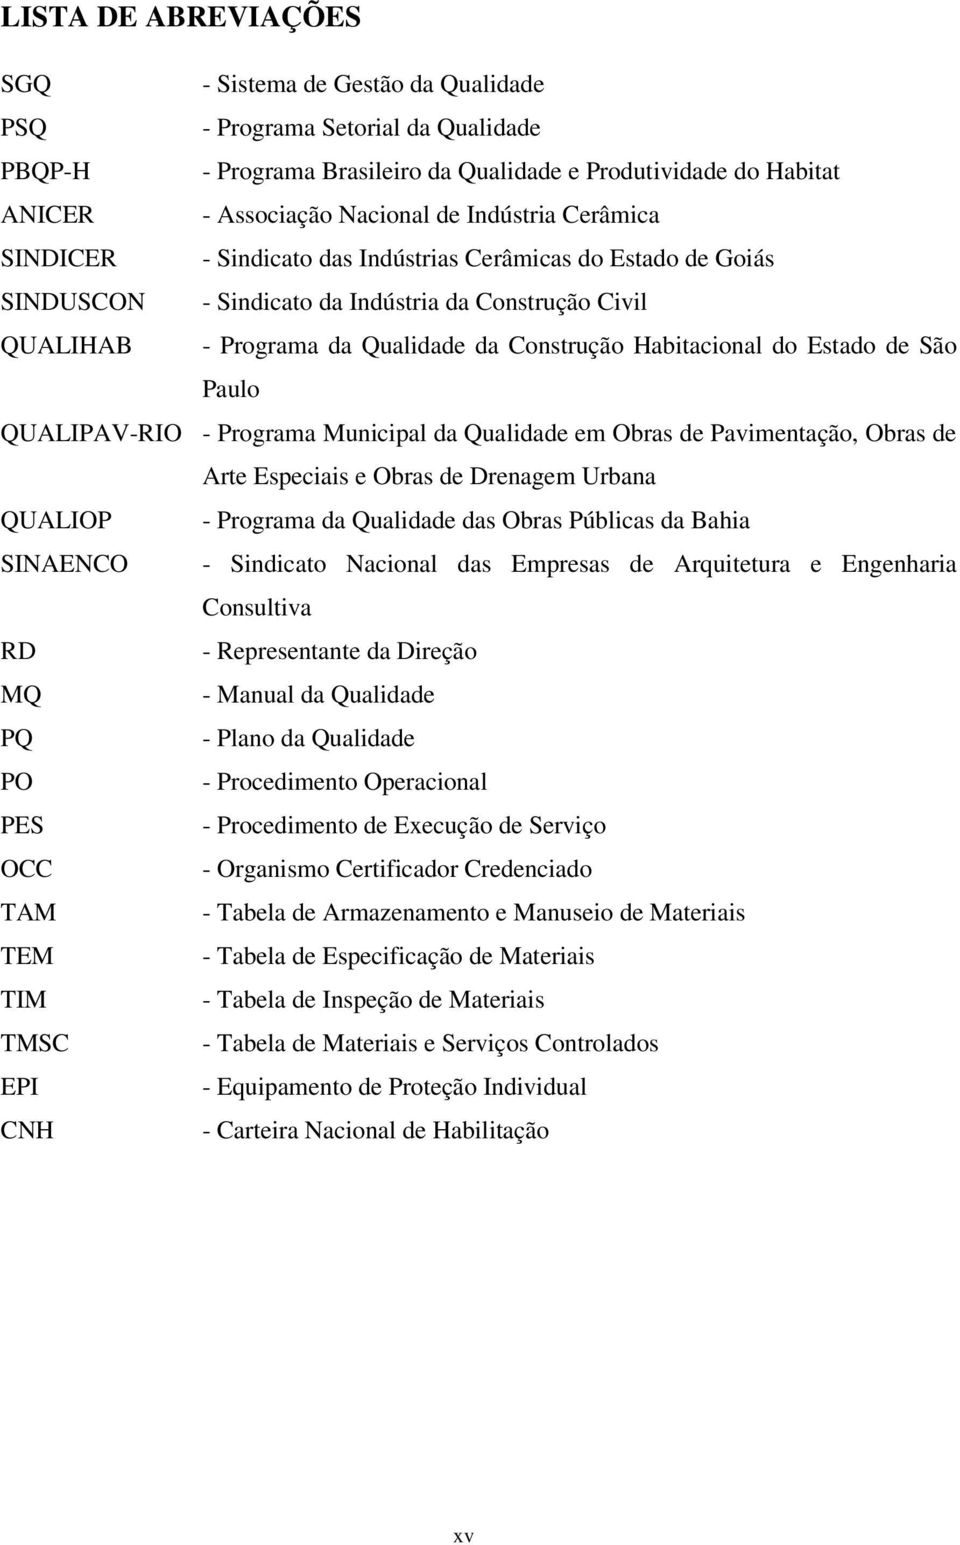 do Estado de São Paulo QUALIPAV-RIO - Programa Municipal da Qualidade em Obras de Pavimentação, Obras de Arte Especiais e Obras de Drenagem Urbana QUALIOP - Programa da Qualidade das Obras Públicas